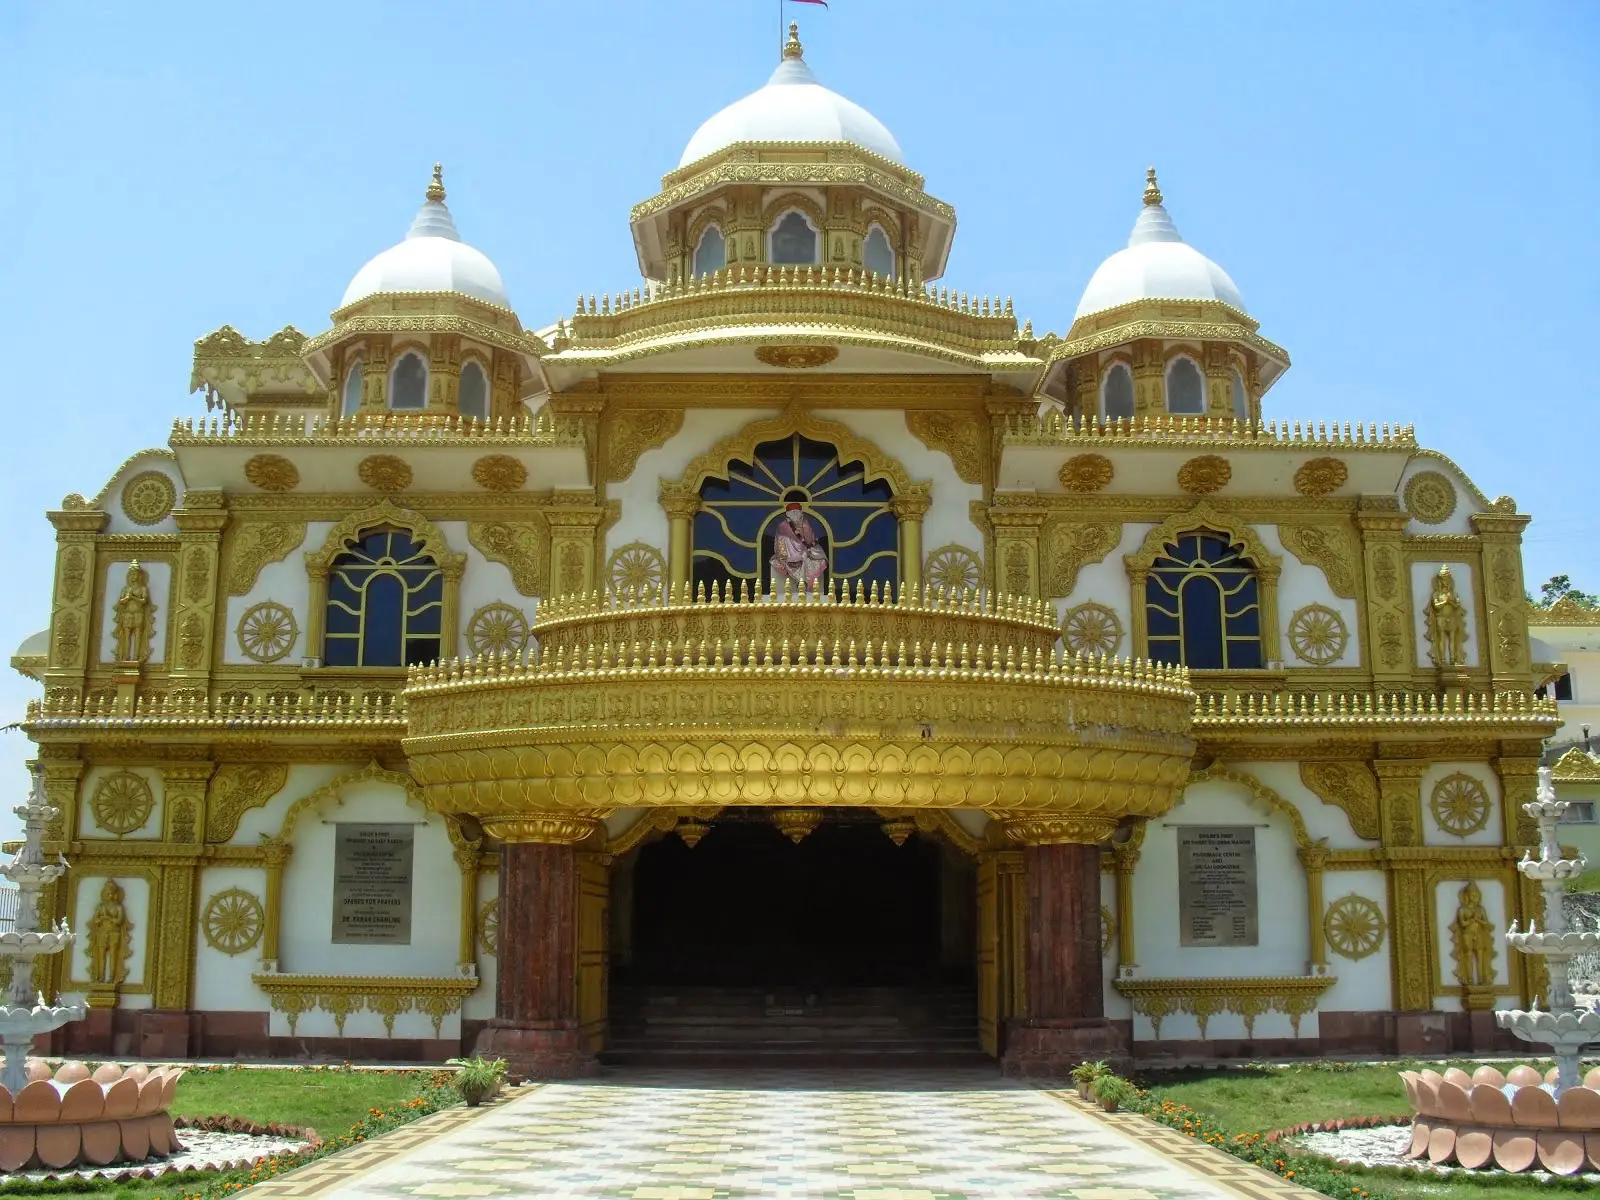 Il tempio Shri Saibaba, una cucina da 40.000 coperti al giorno